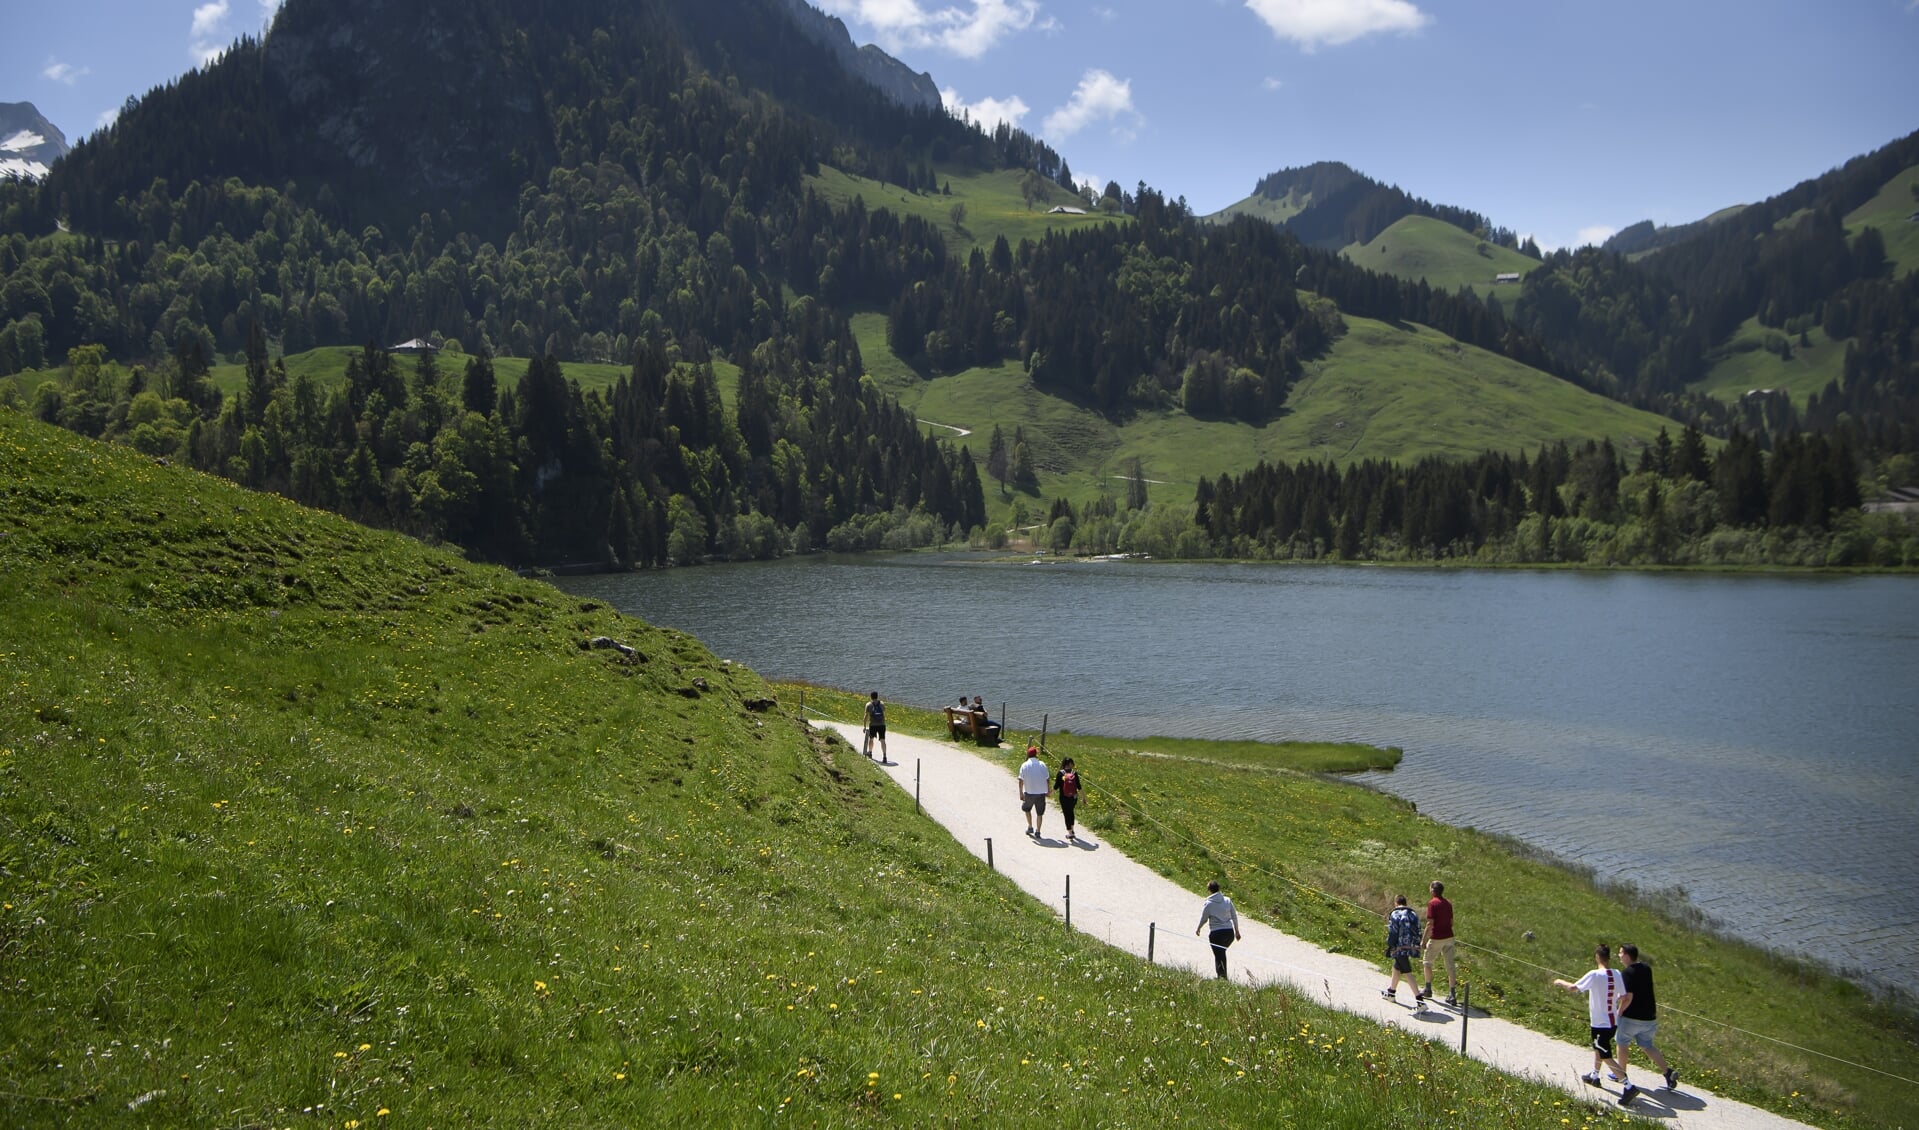 Zwitserland heeft meer toeristen dan gebruikelijk.